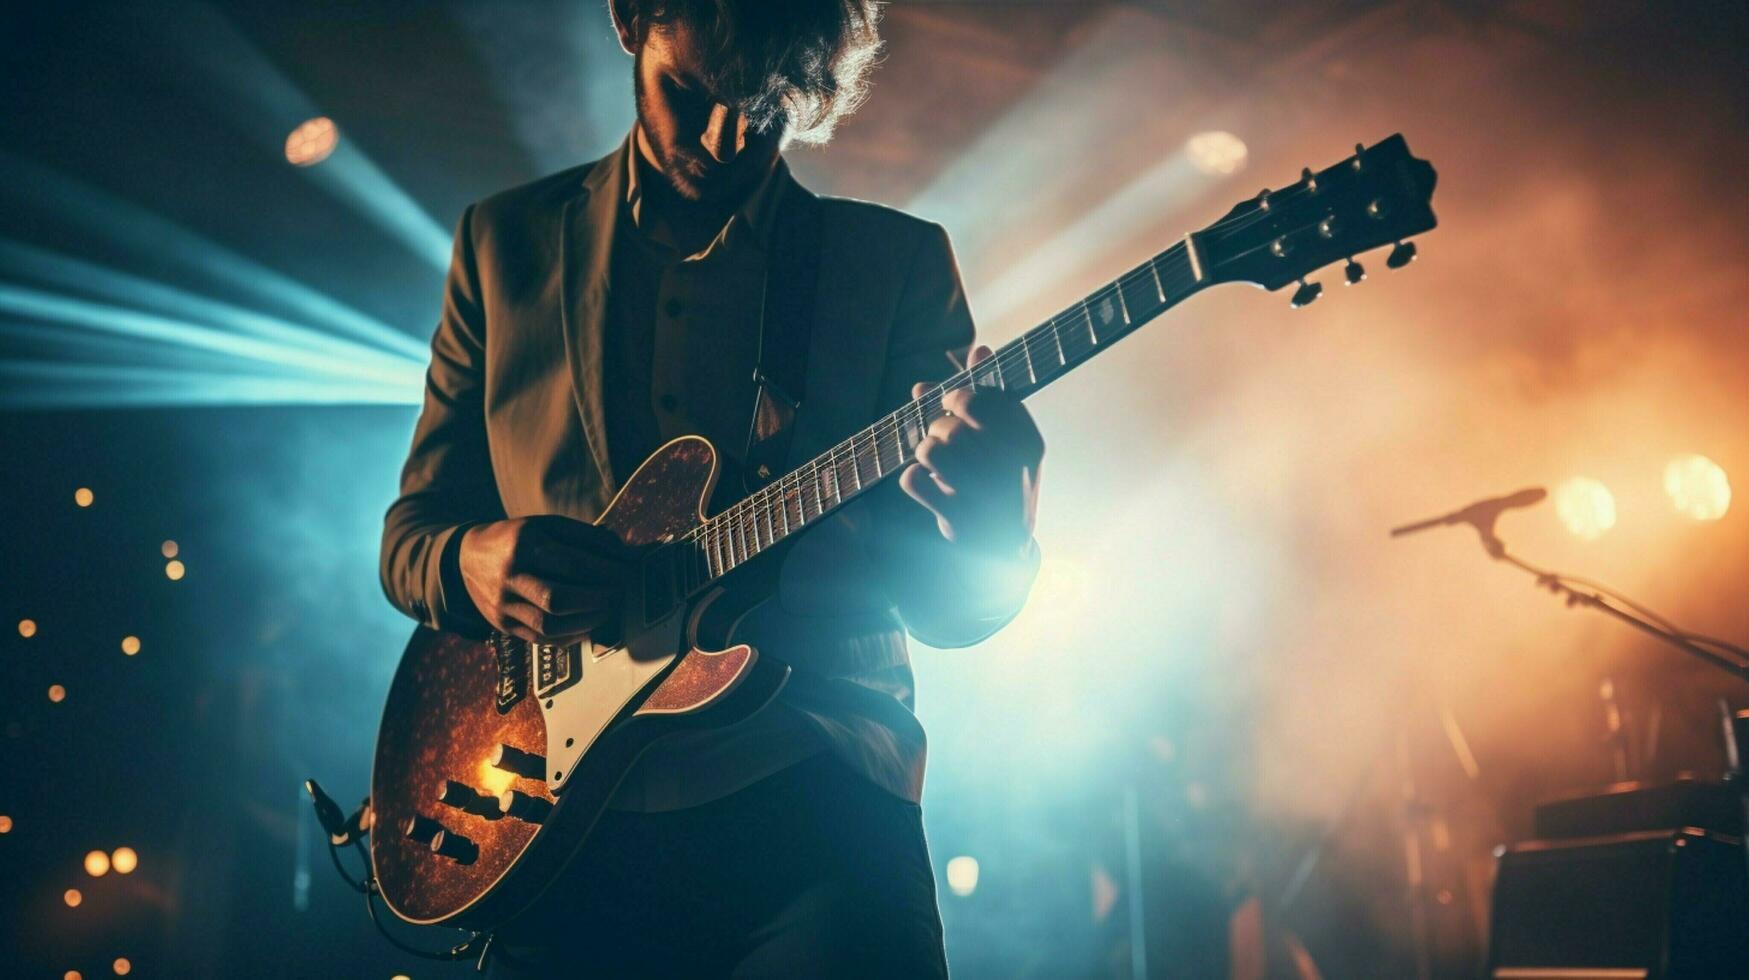 Pop Musiker halten Gitarre führt aus auf Bühne foto